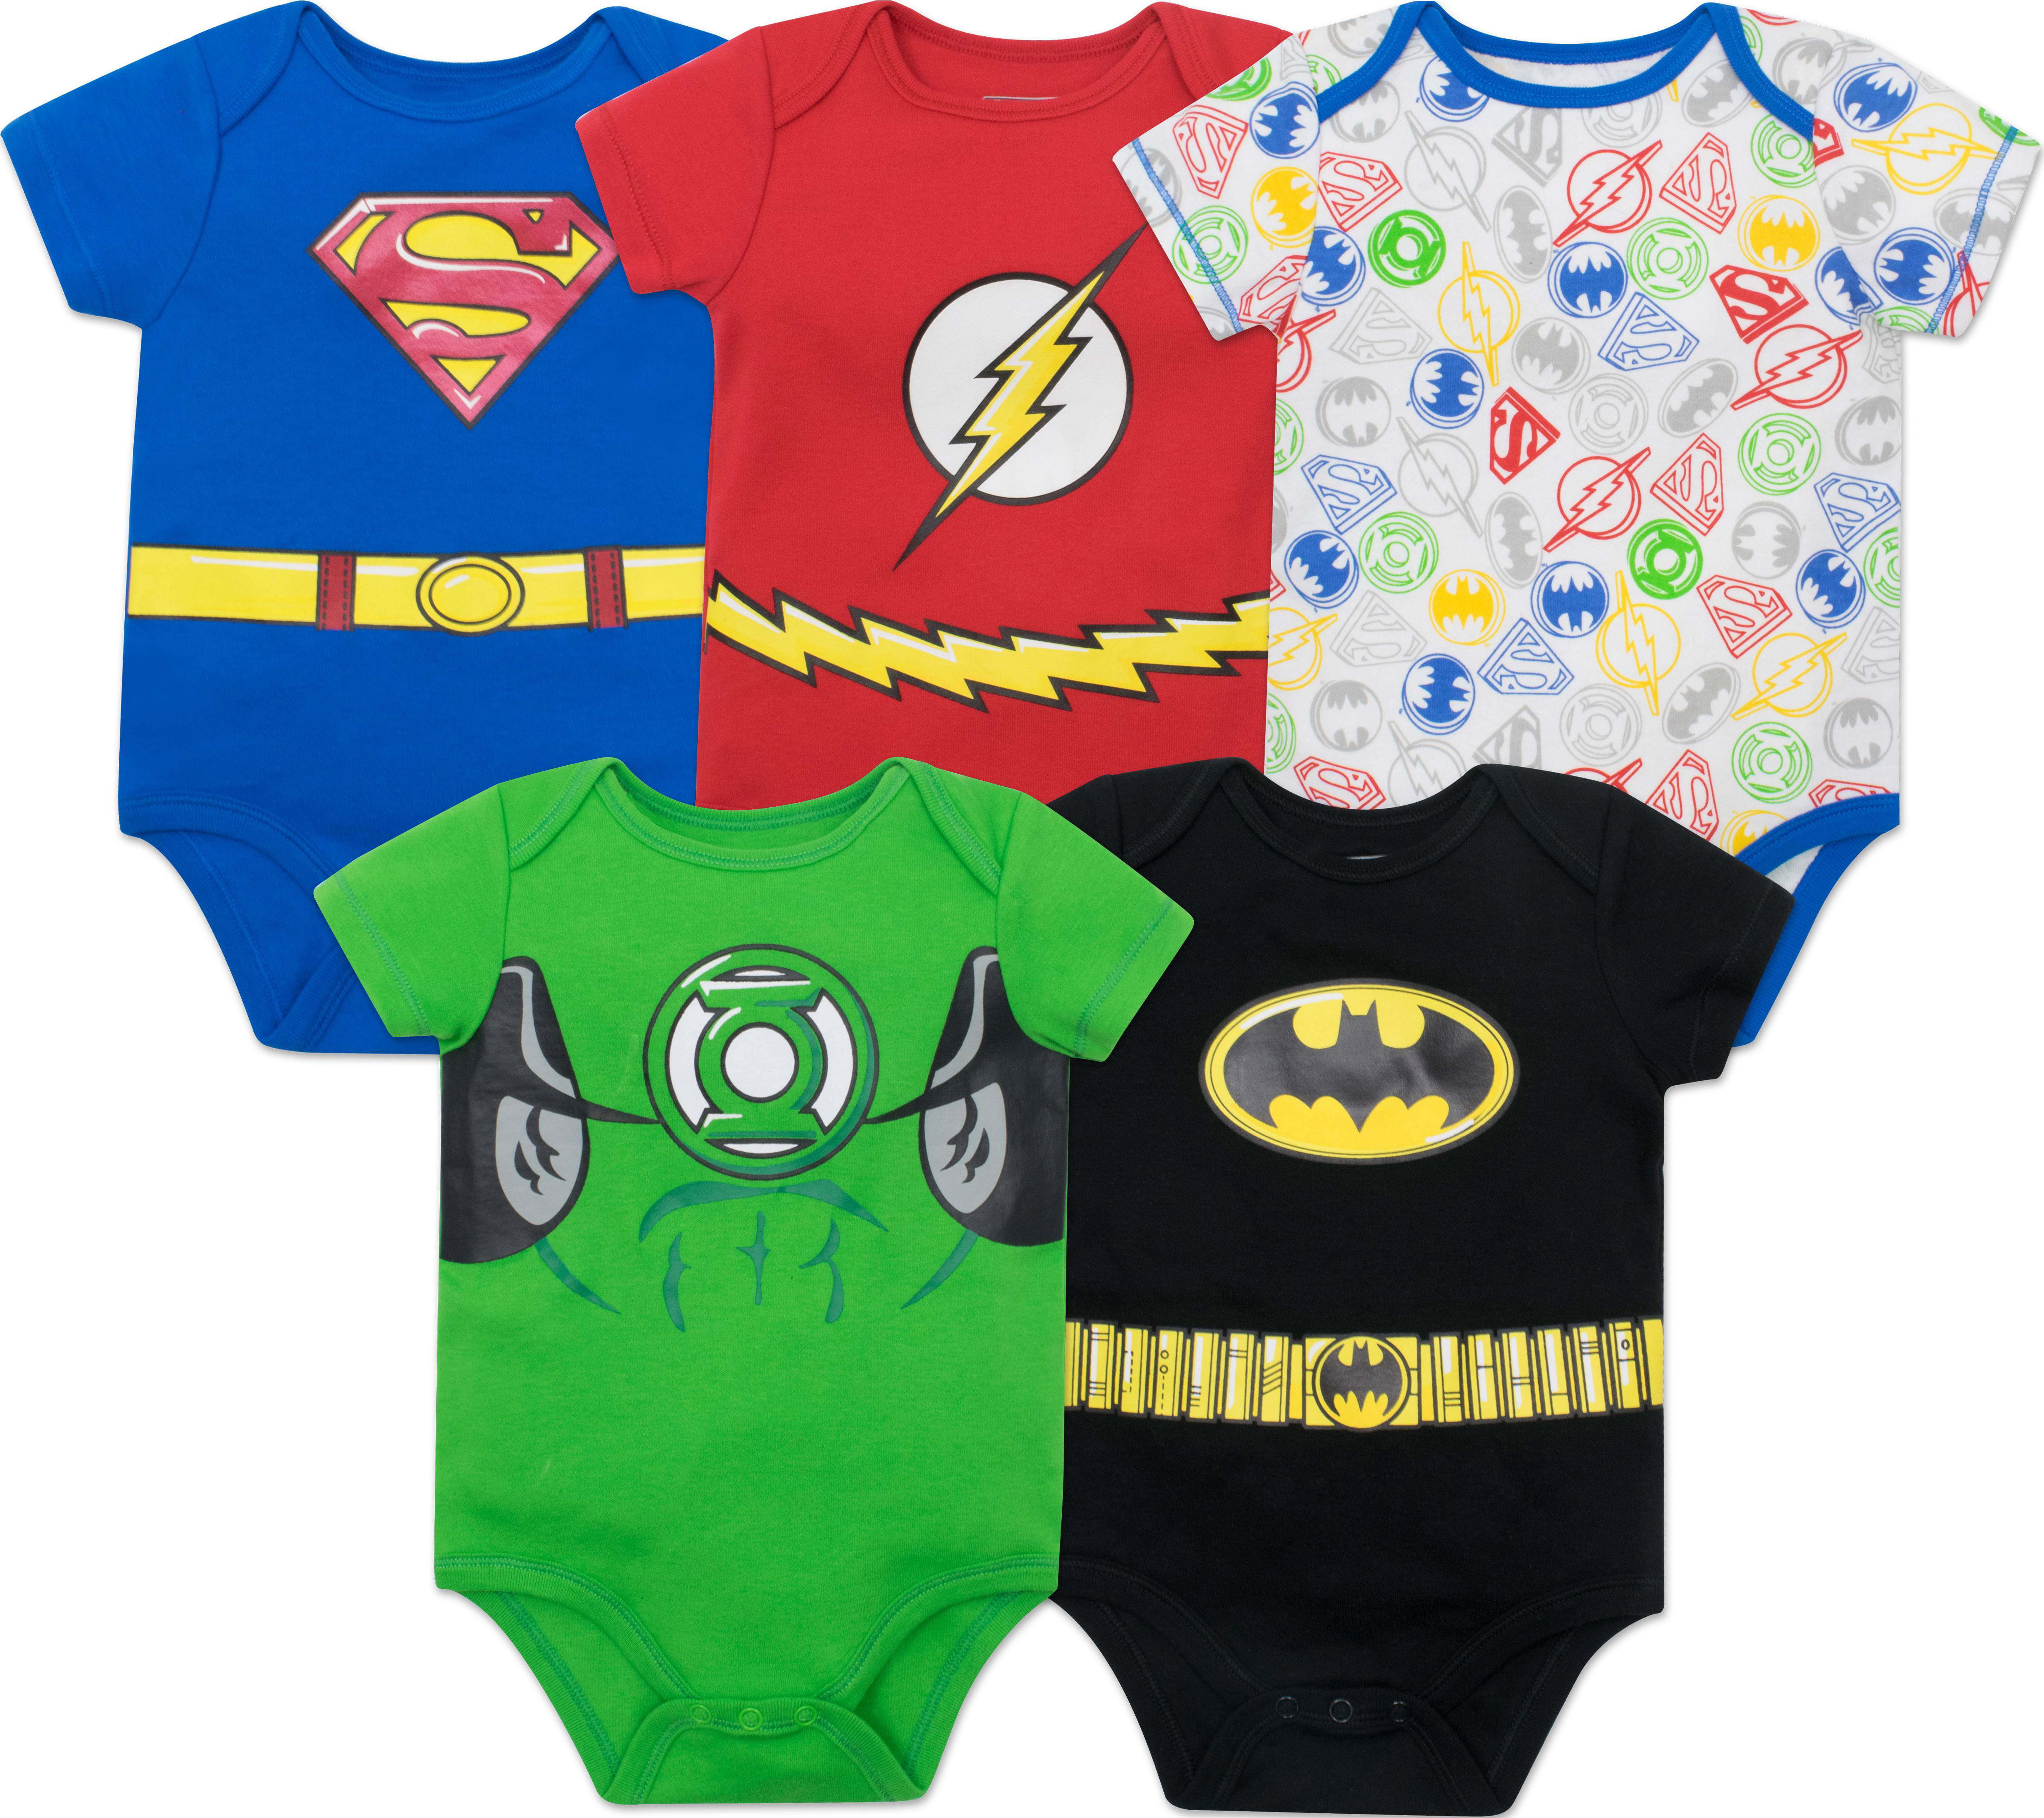 Batman Justice League Baby Boys Bodysuit and Cape Set Superman & The Flash